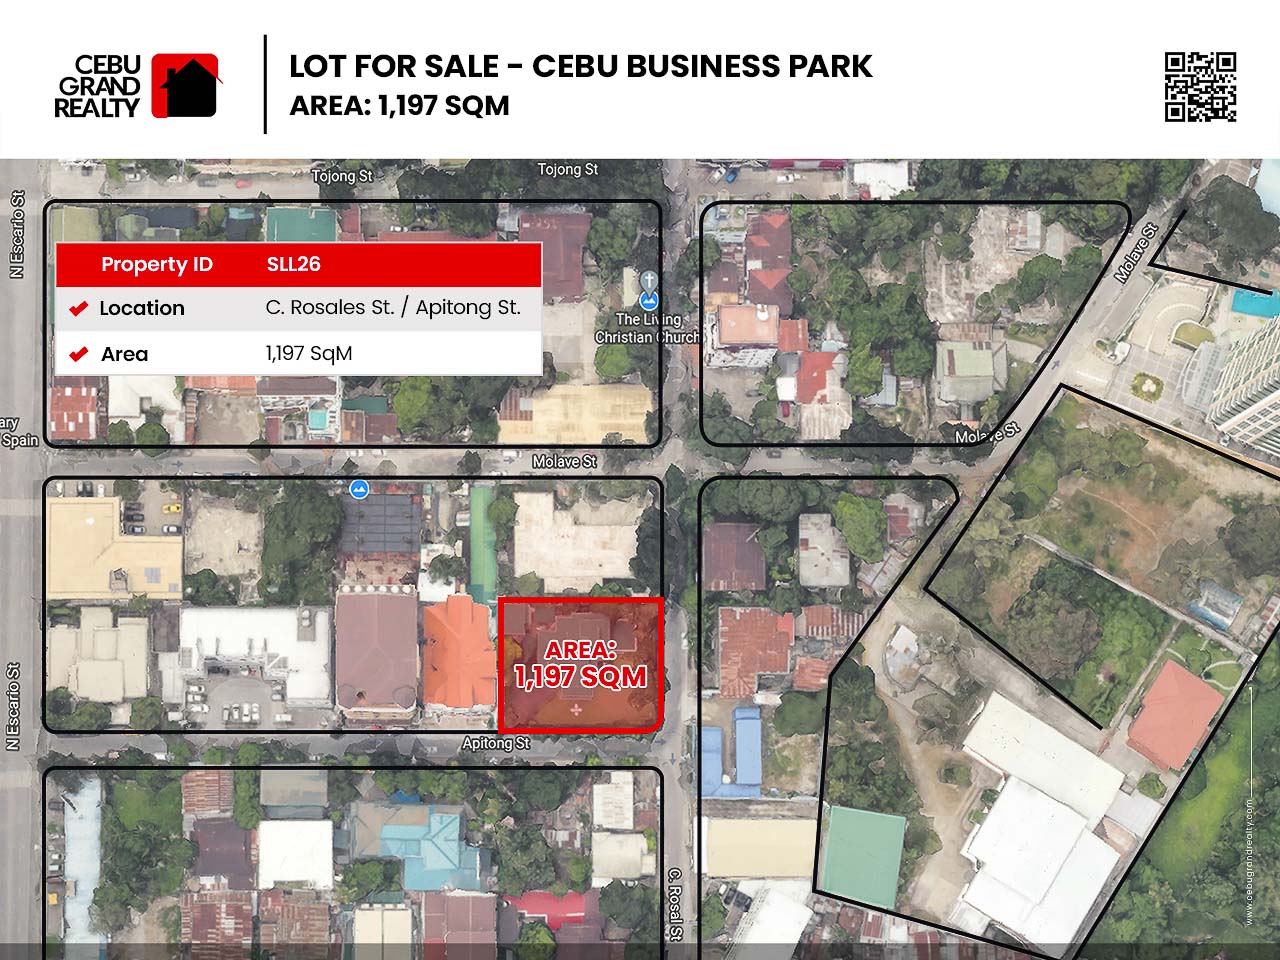 SLL26 - 1197 SqM Lot for Sale near Cebu Business Park - Cebu Grand Realty